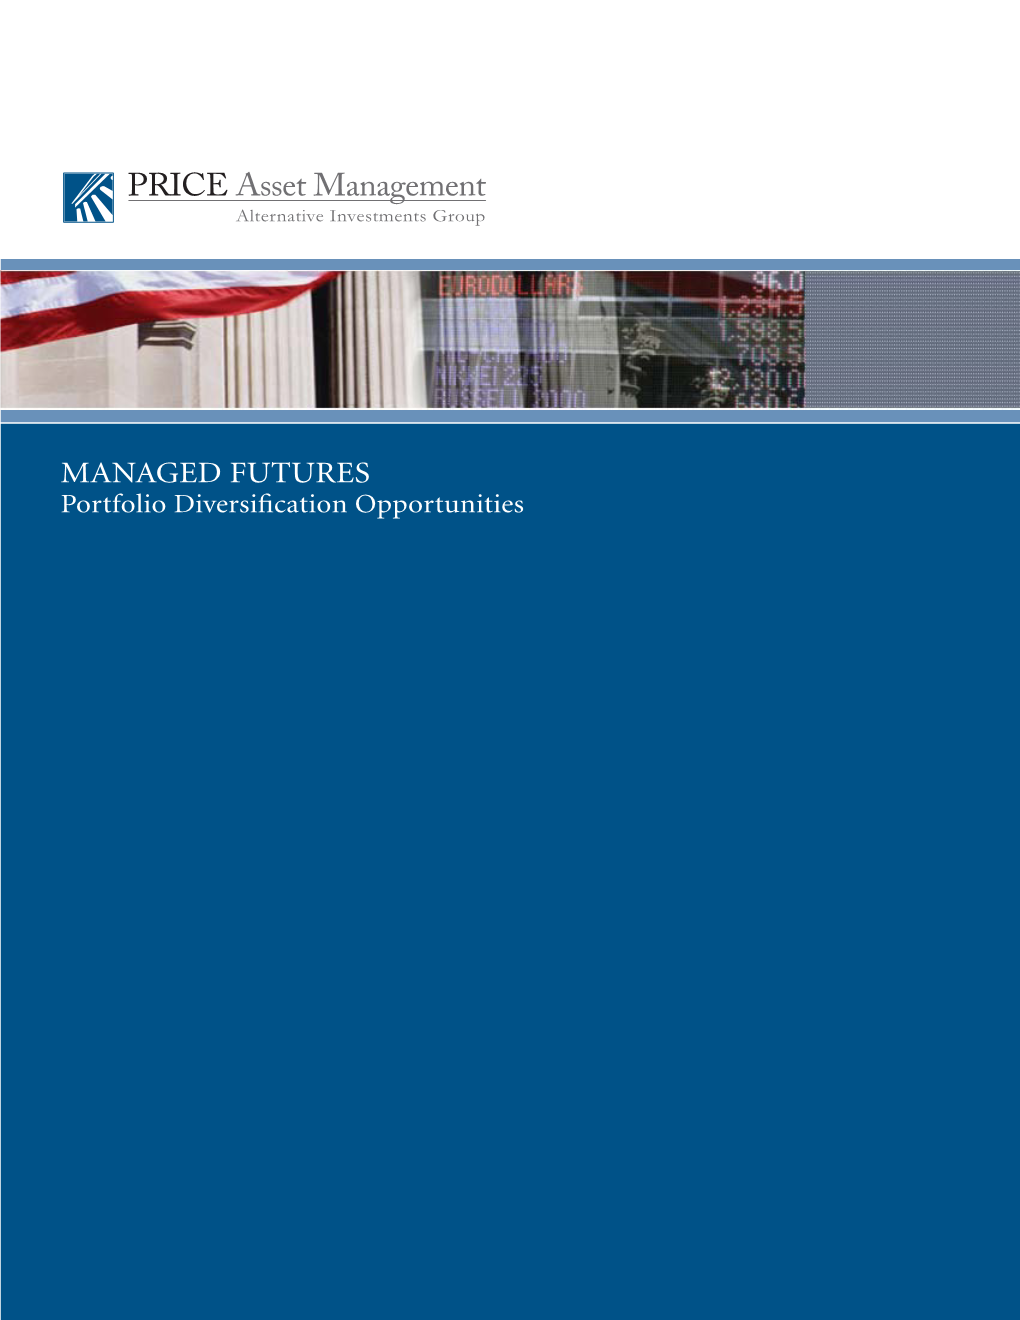 Price Asset Management Brochure Rev-1-09.Indd